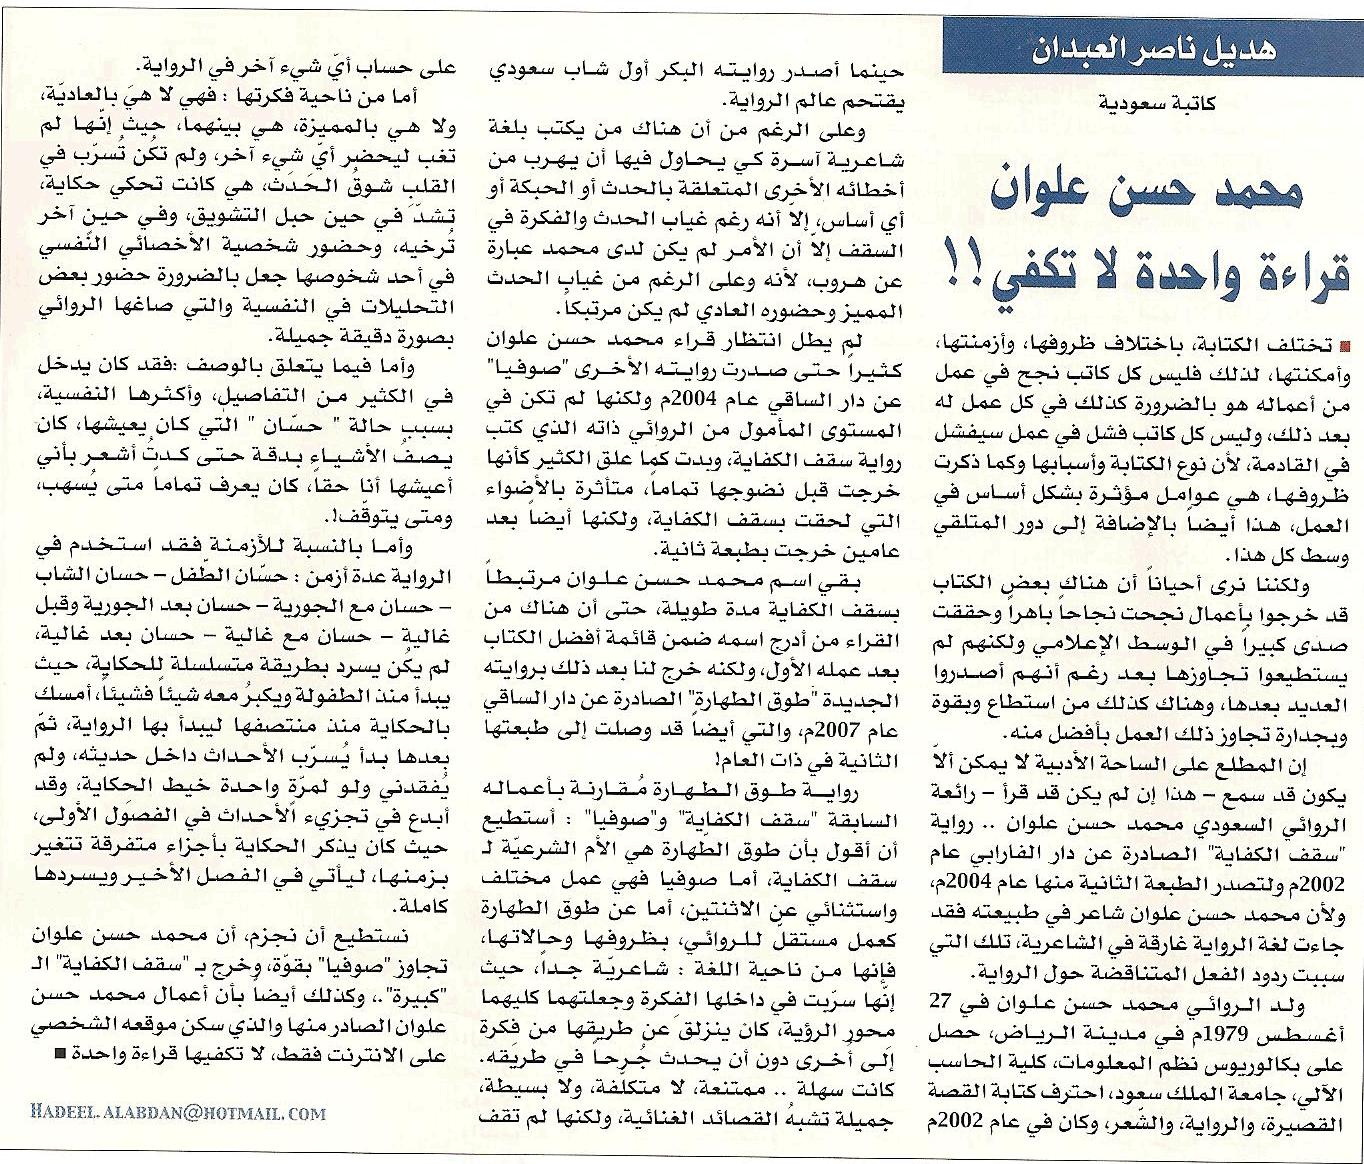 مقالة نقدية عن رواية طوق الطهارة لمحمد حسن علوان في مجلة المجلة - 2008